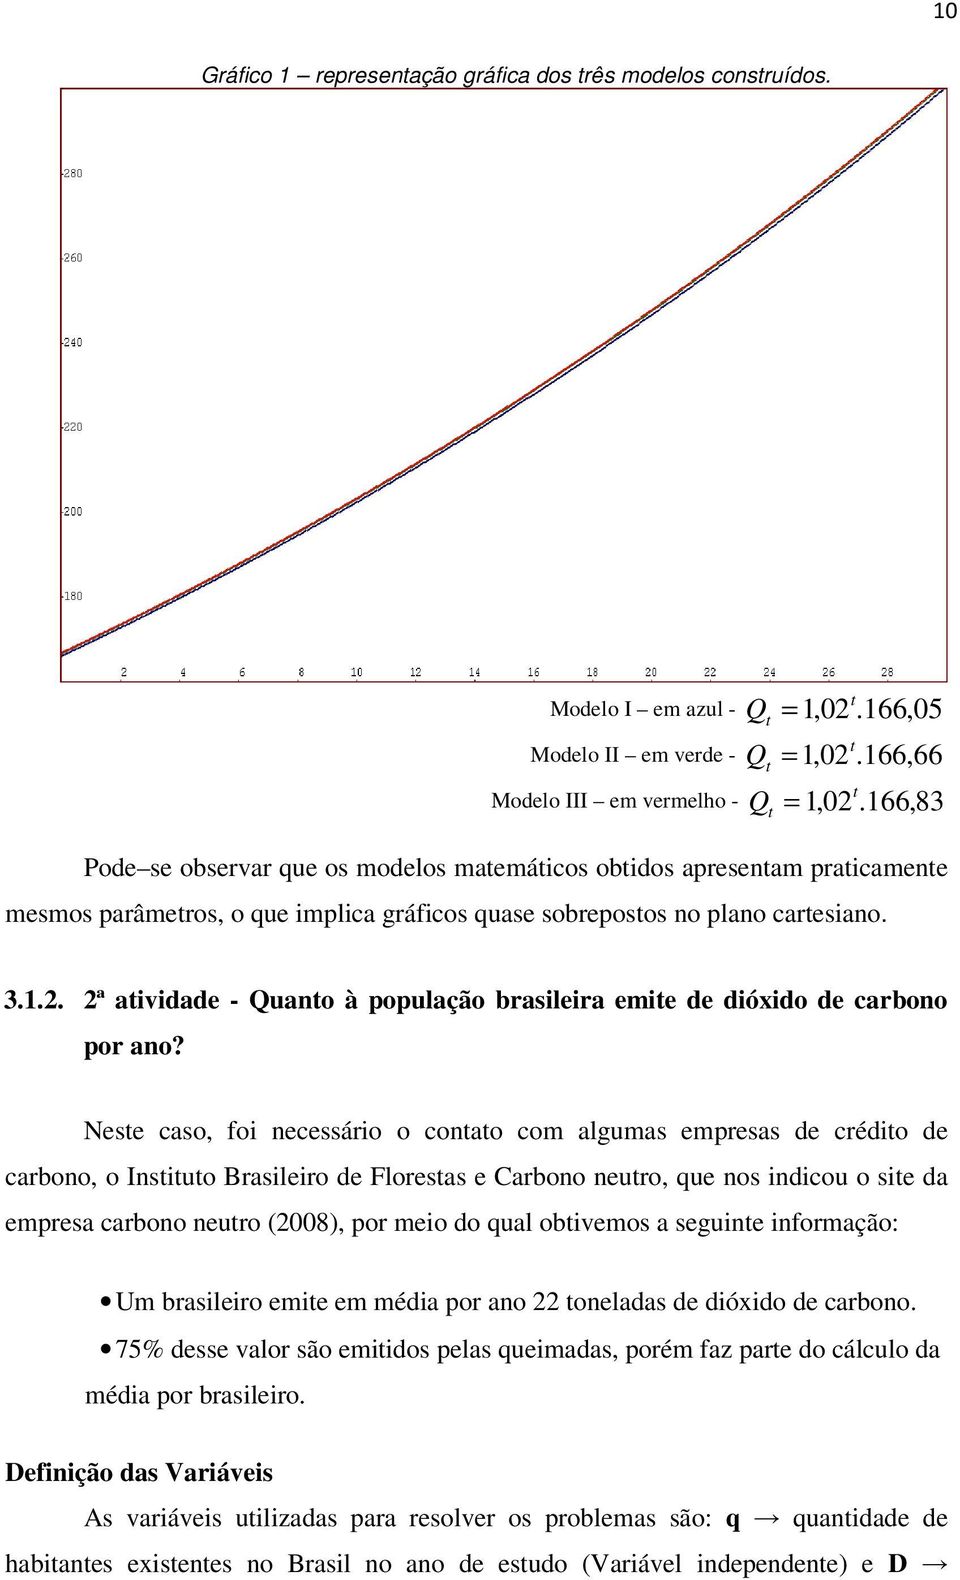 2ª aividade - Quao à população brasileira emie de dióxido de carboo por ao?